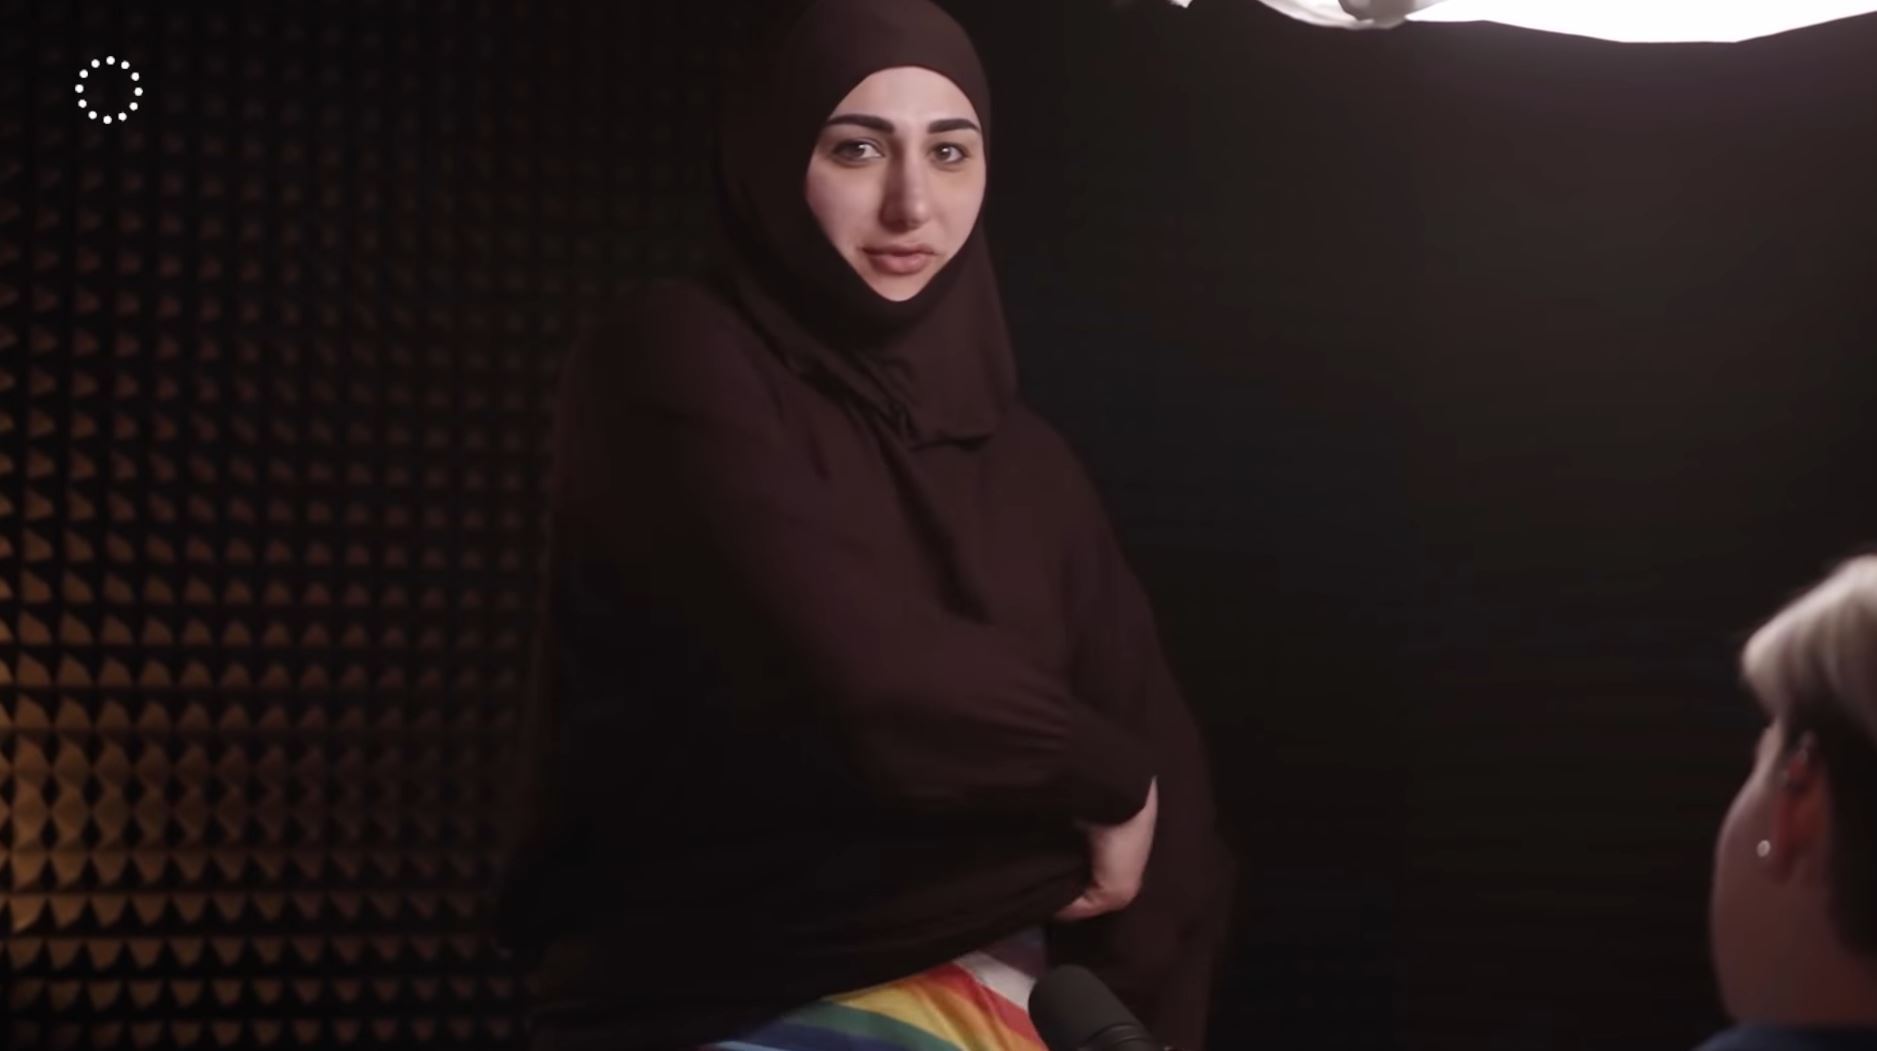 Видео] «Для меня смертельно опасно то, что я делаю»: каминг-аут  трансгендерной женщины из Дагестана - Парни ПЛЮС